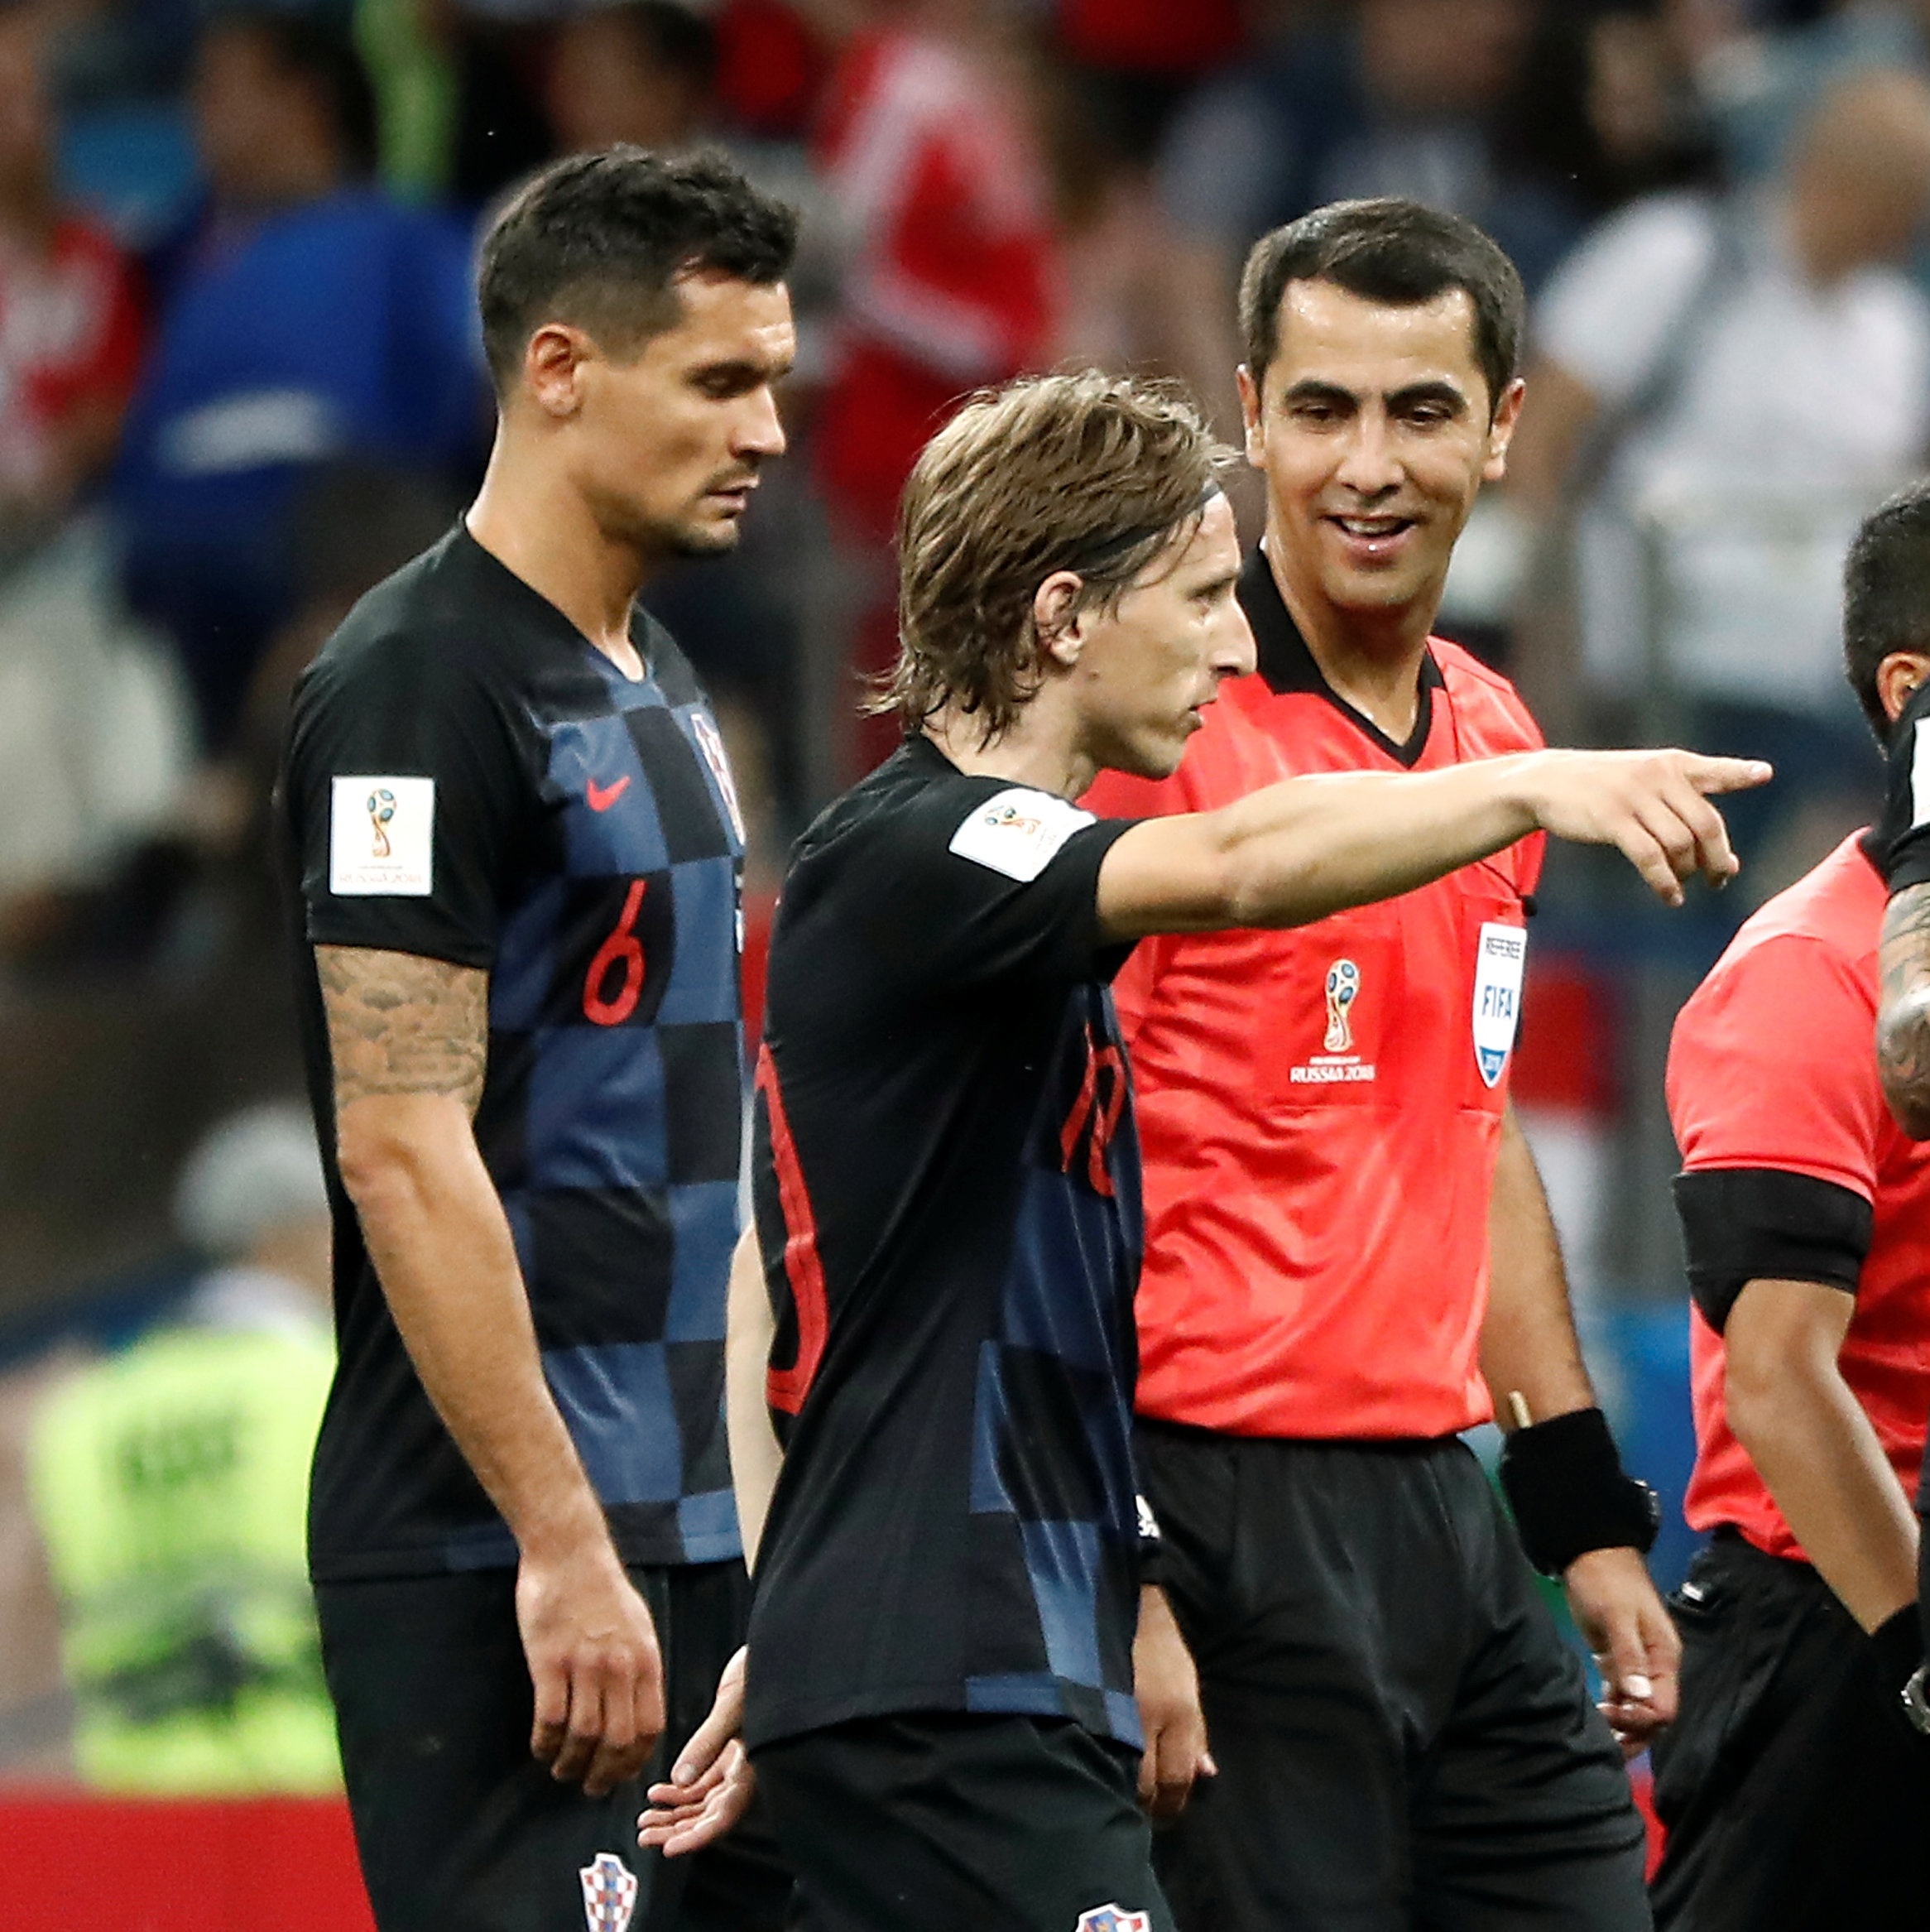 Copa 2018: Croácia bate Argentina por 3 a 0 e vai às oitavas após